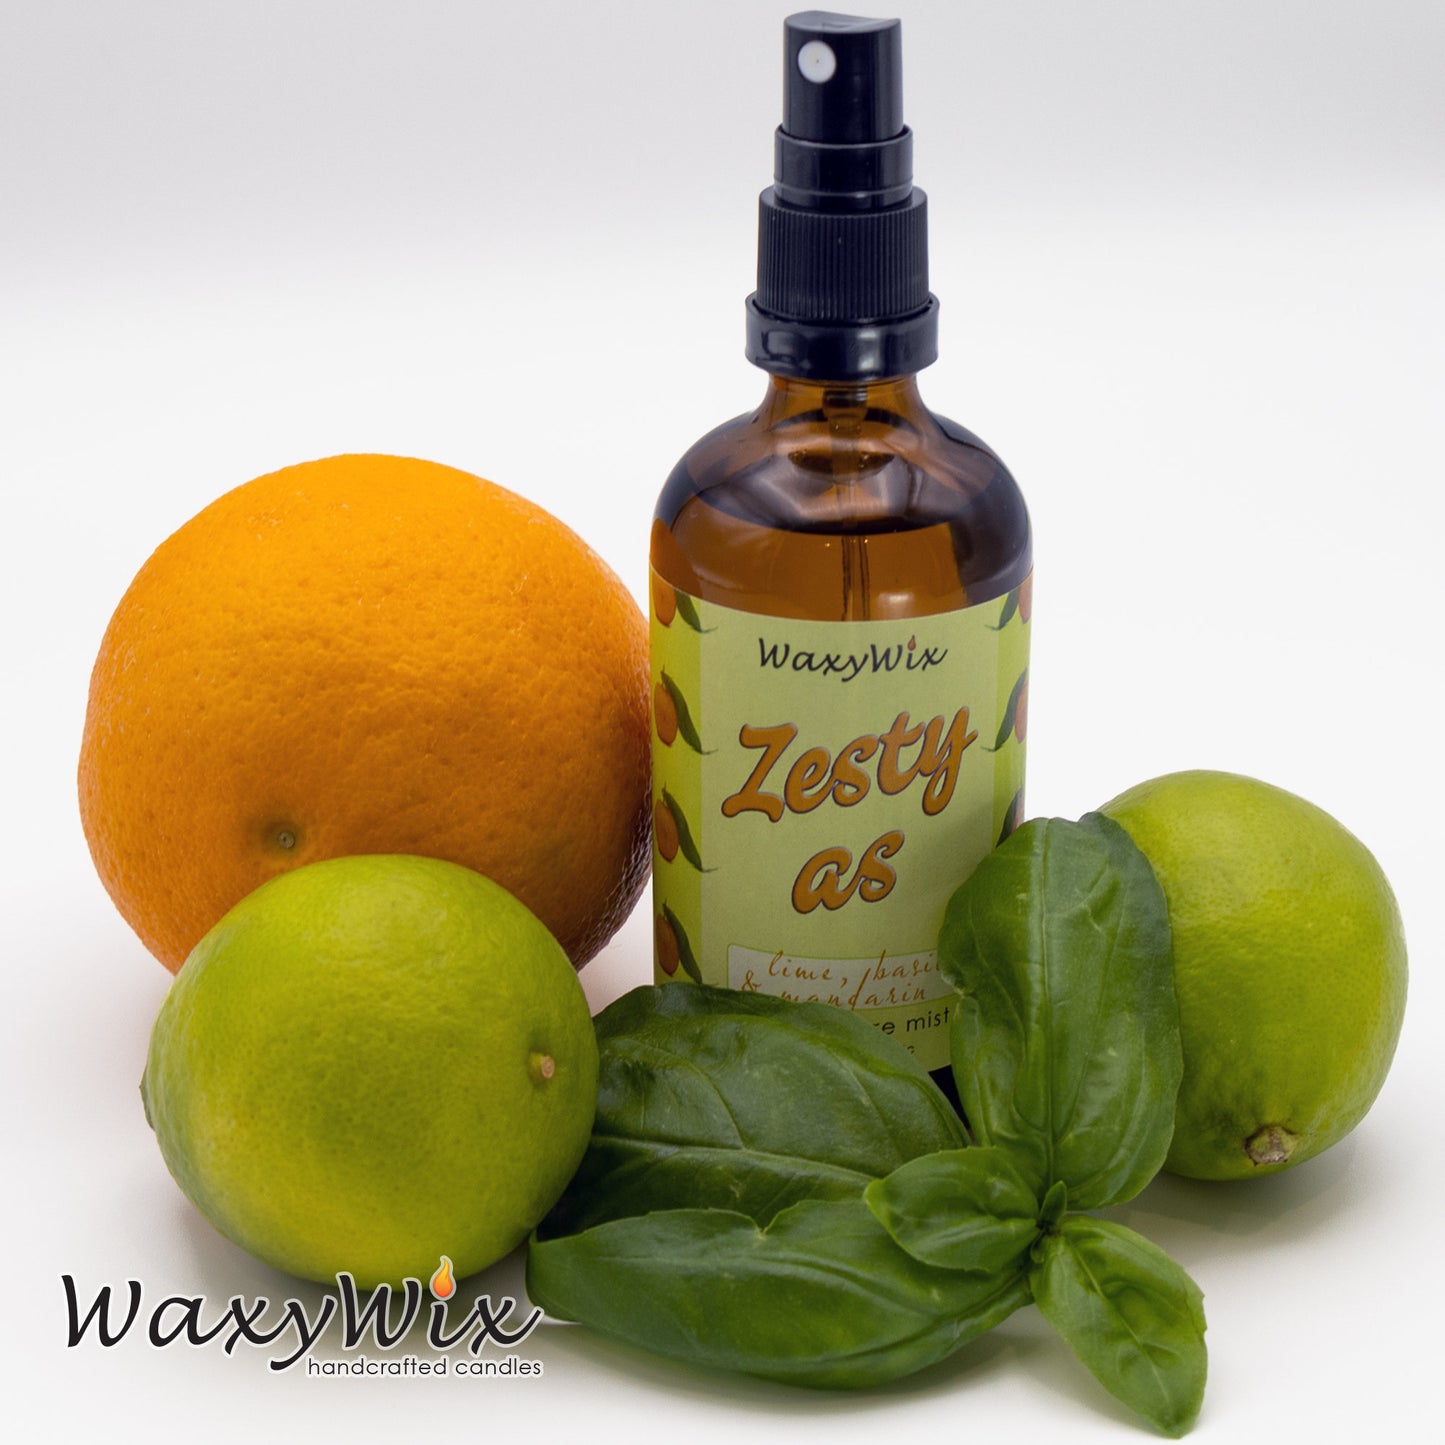 Zesty AS Lime, basil & mandarin room spray